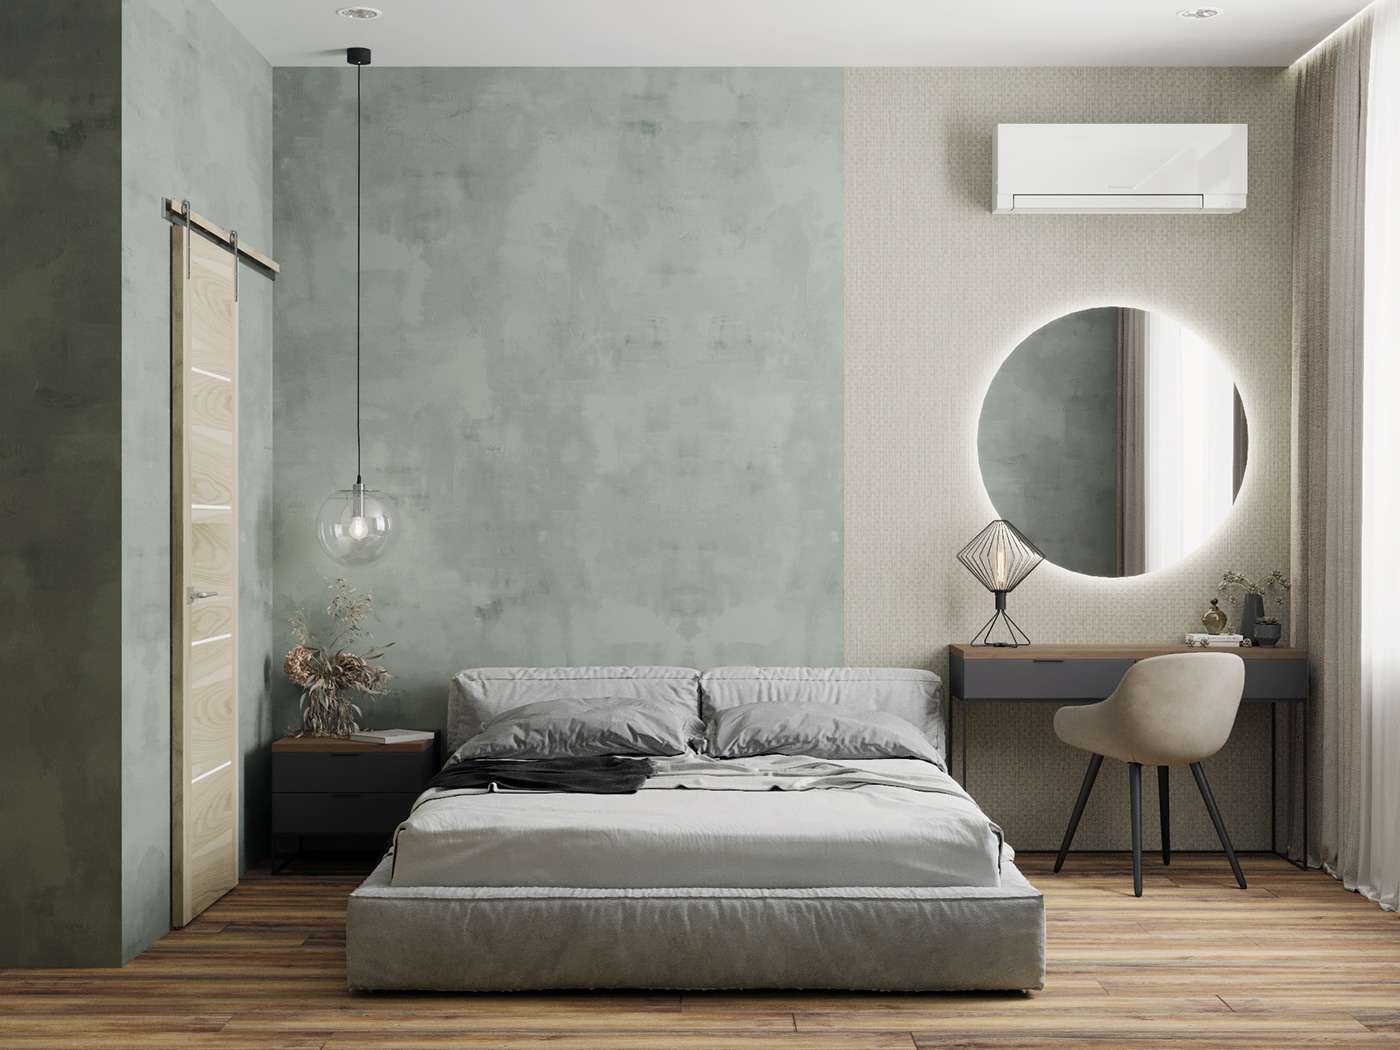 Mẫu thiết kế phòng ngủ hiện đại với gam màu xanh lá, tạo không gian tươi mới và thoải mái, hoàn hảo cho người mệnh Hỏa